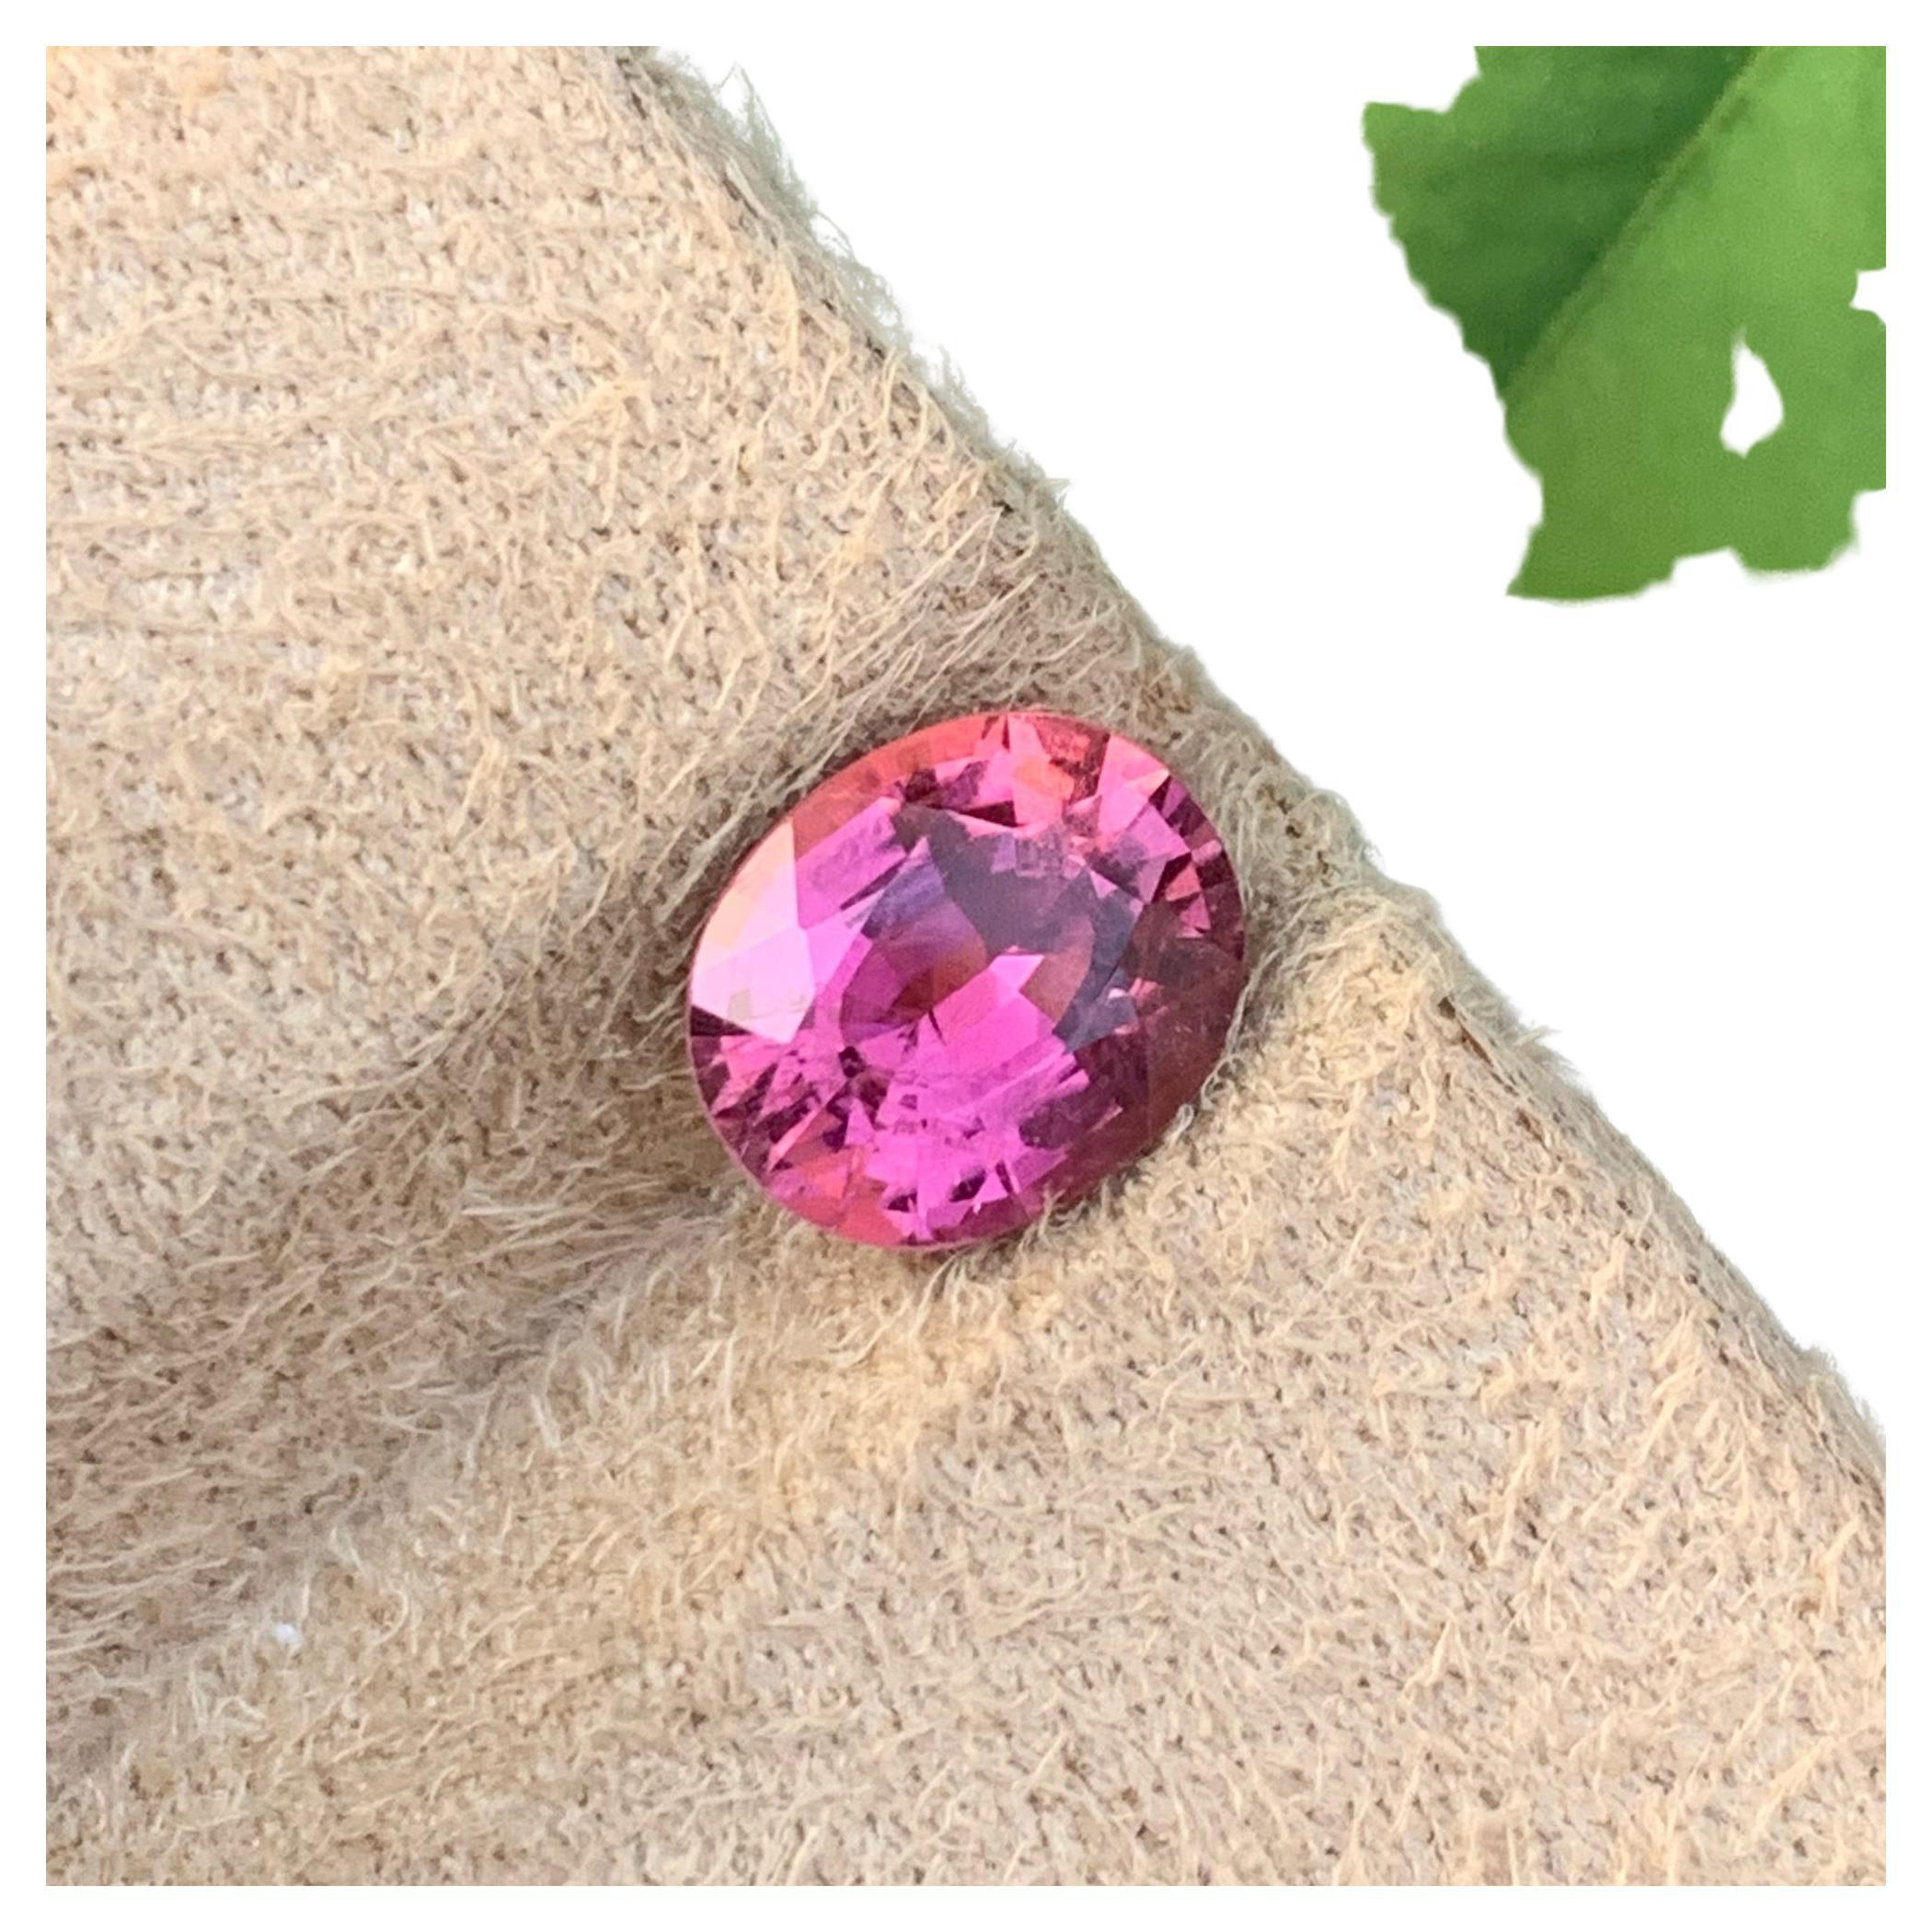 Natürlicher Hot Pink Turmalin Stein von 2,05 Karat aus Afghanistan hat einen wunderschönen Schliff in einer ovalen Form, unglaubliche rosa Farbe. Große Brillanz. Dieses Schmuckstück ist  Augensaubere Klarheit.

Informationen zum